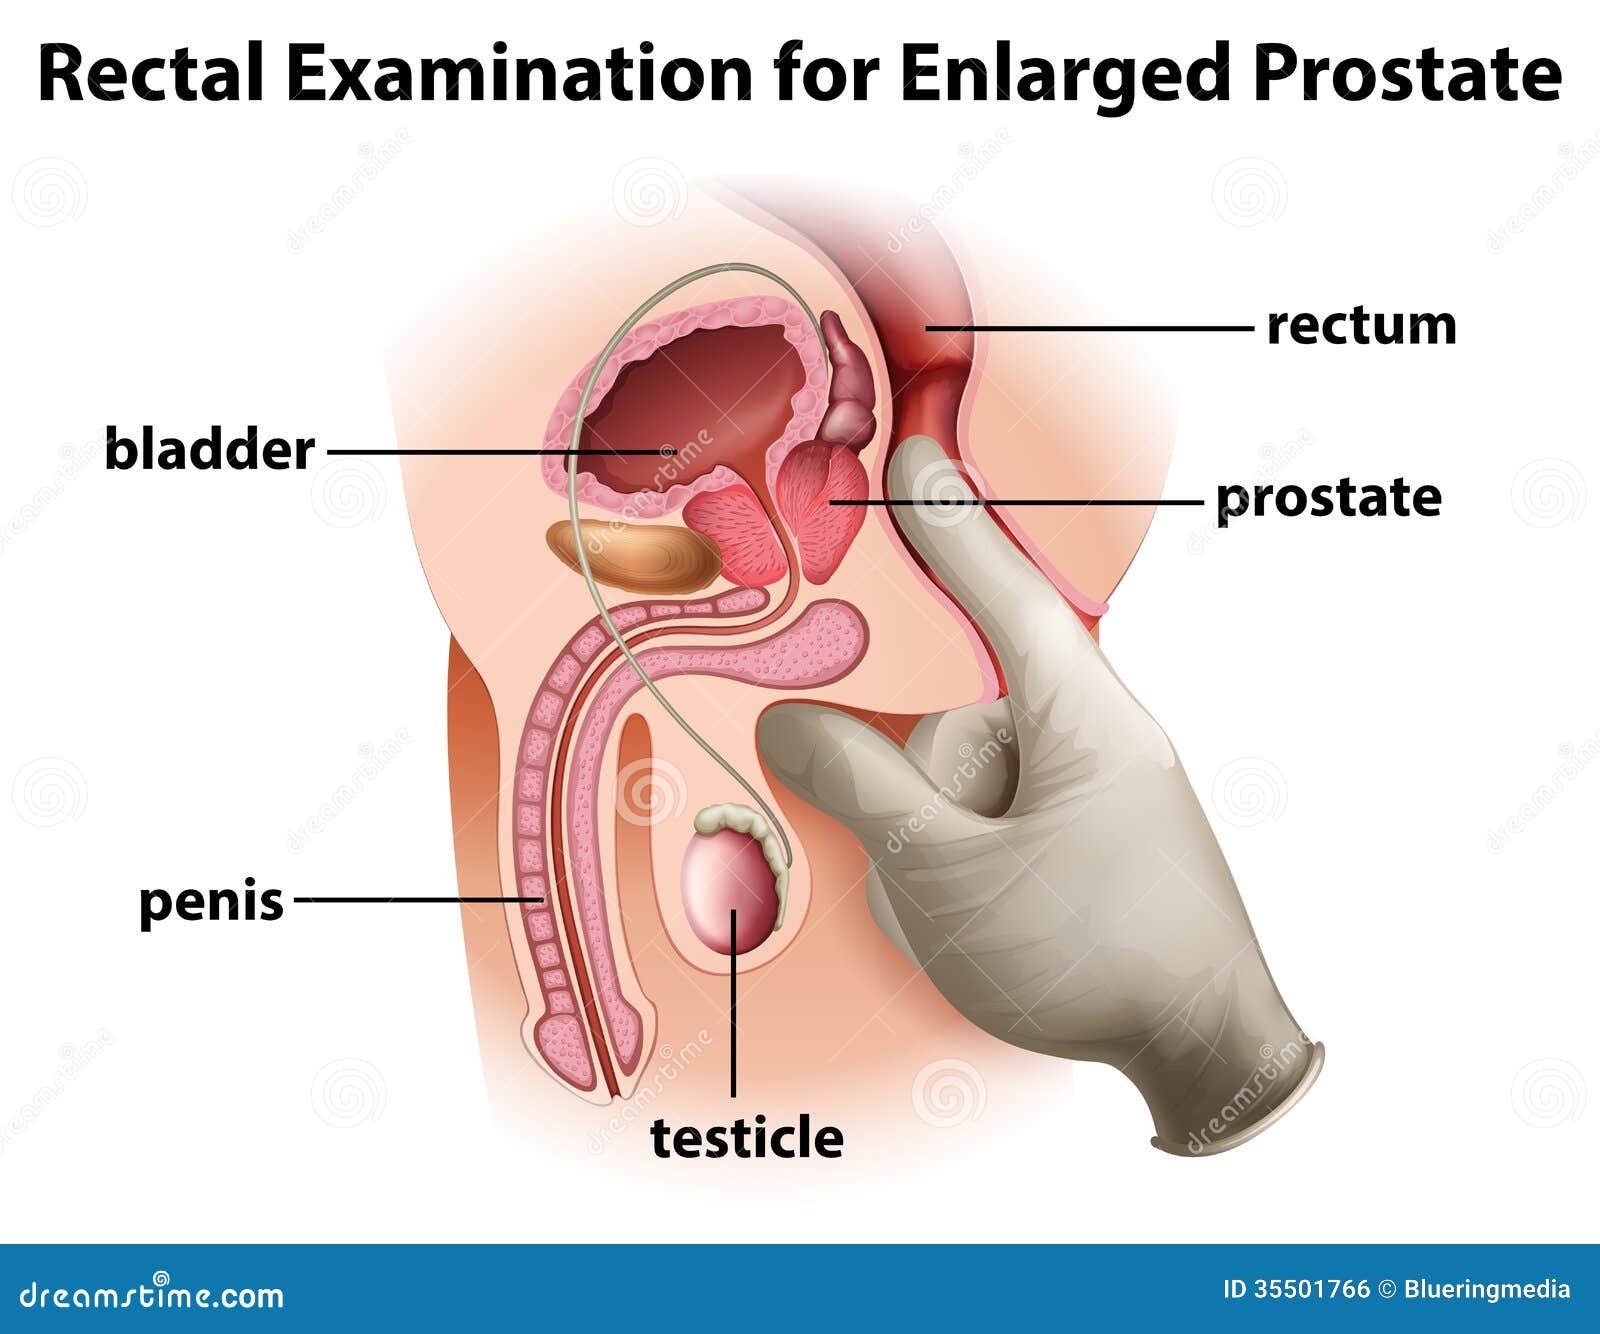 diagnosticul rectal al prostatitei)